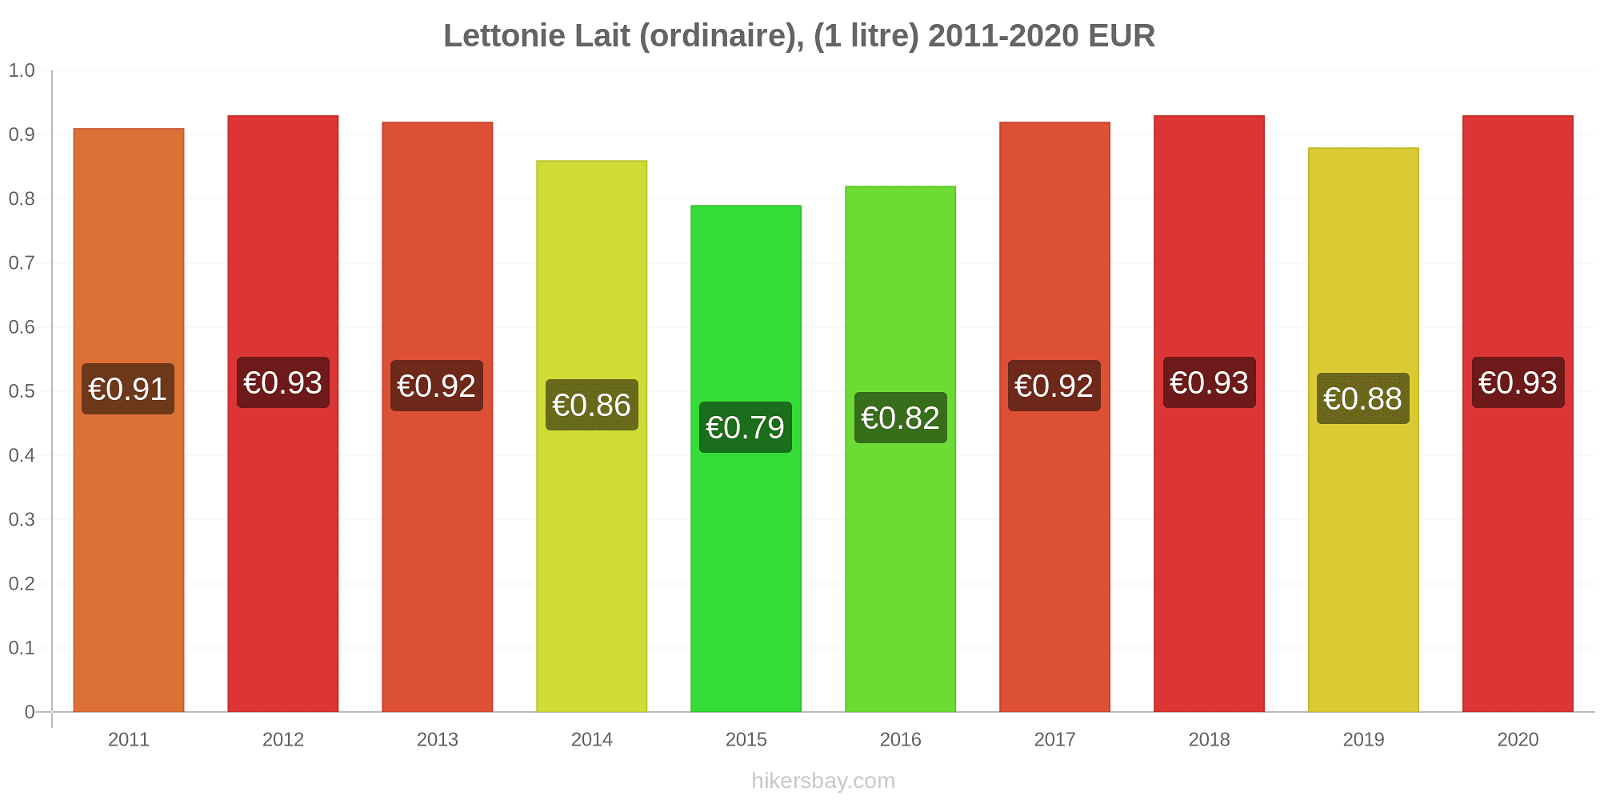 Lettonie changements de prix (Régulier), lait (1 litre) hikersbay.com